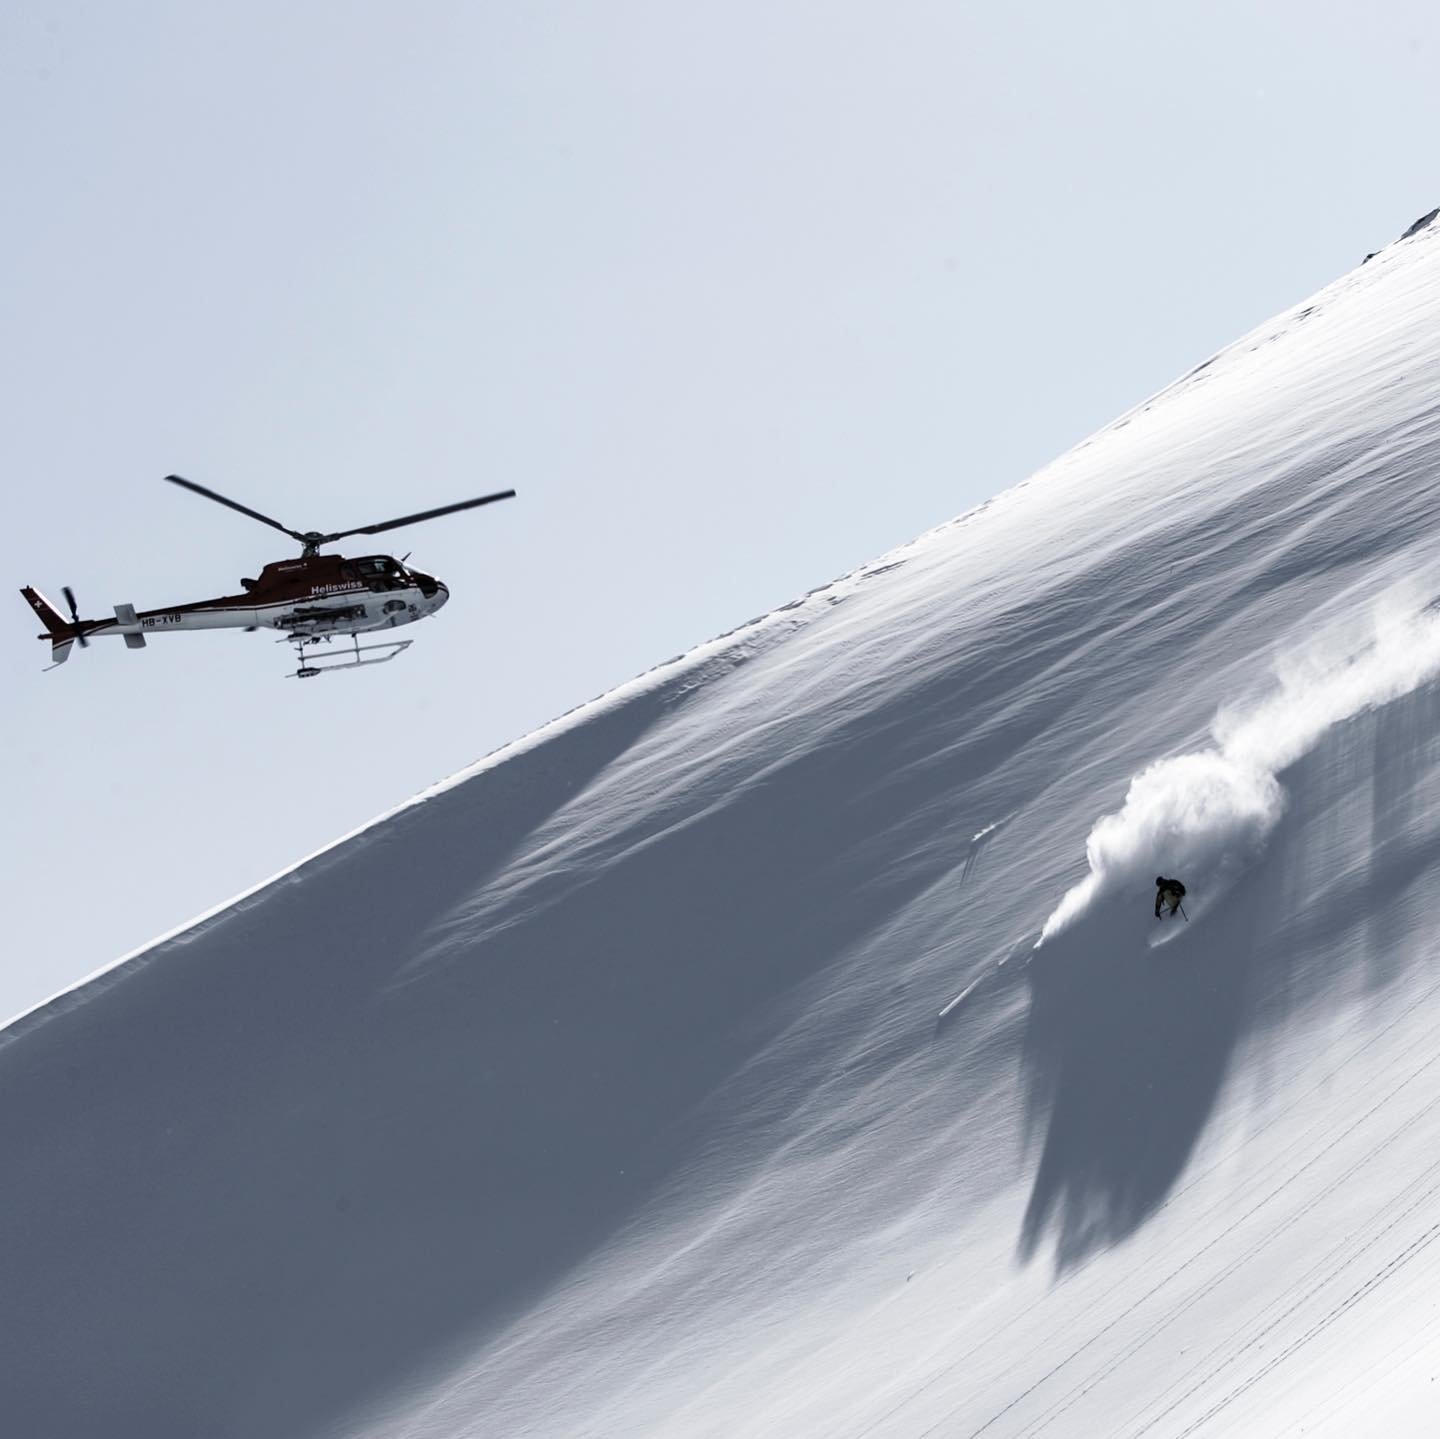 Seorang pemain ski menuruni bukit saat helikopter melacak kemajuan mereka di Pegunungan Kaçkar, Rize, Turki utara, 17 Januari 2022. (Foto DHA)